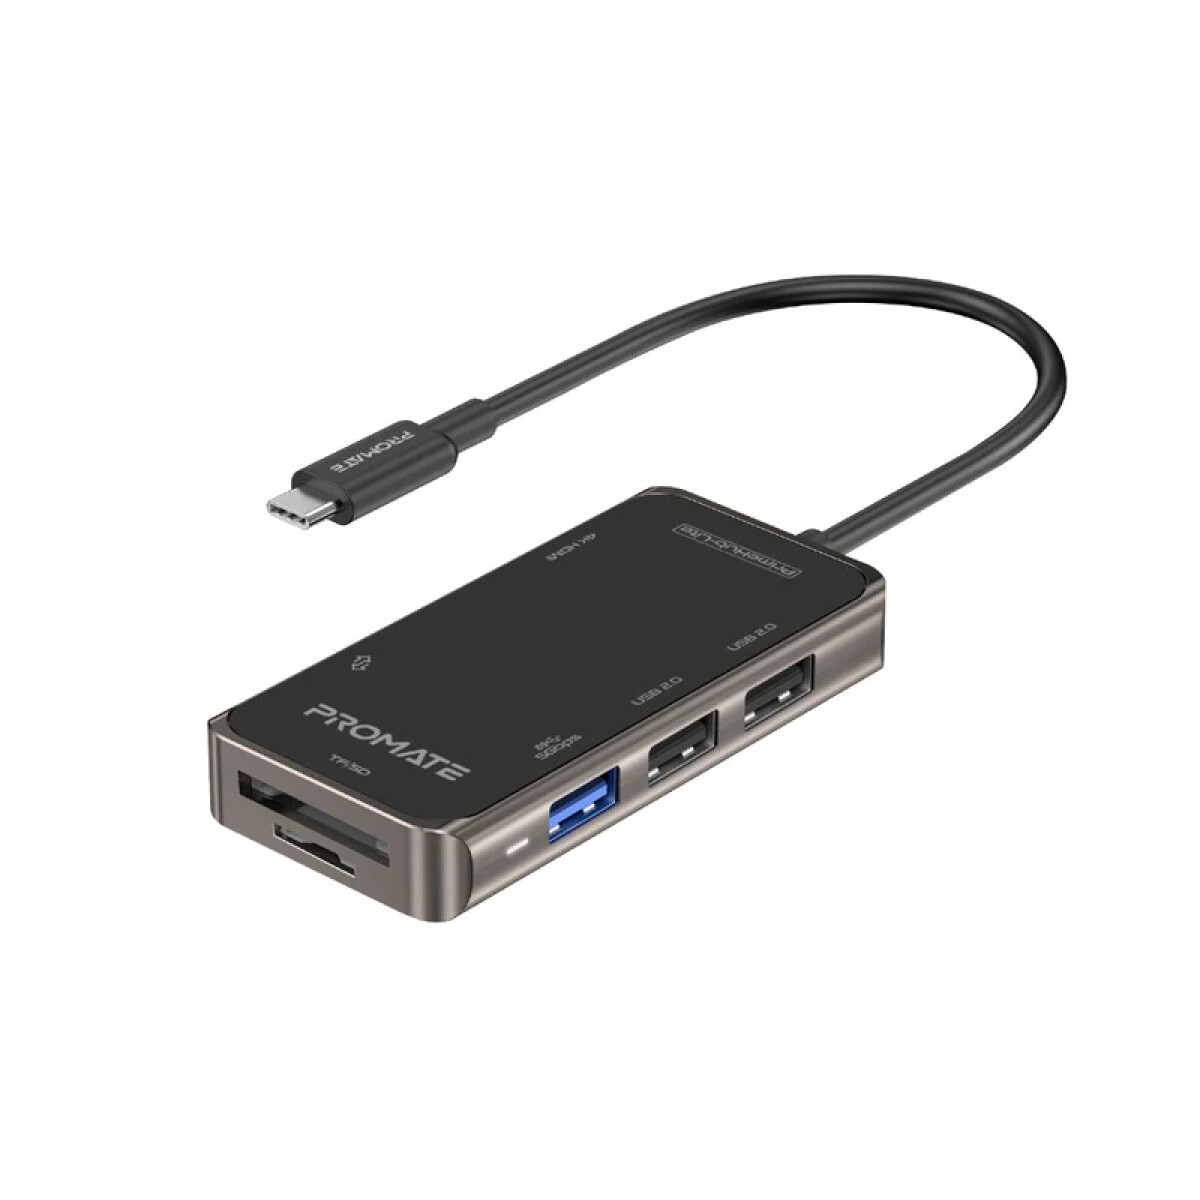 PROMATE PRIMEHUB-MINI HUB USB-C 110W/PD/HDMI/LAN/3USB 3.0/SD - 5935 